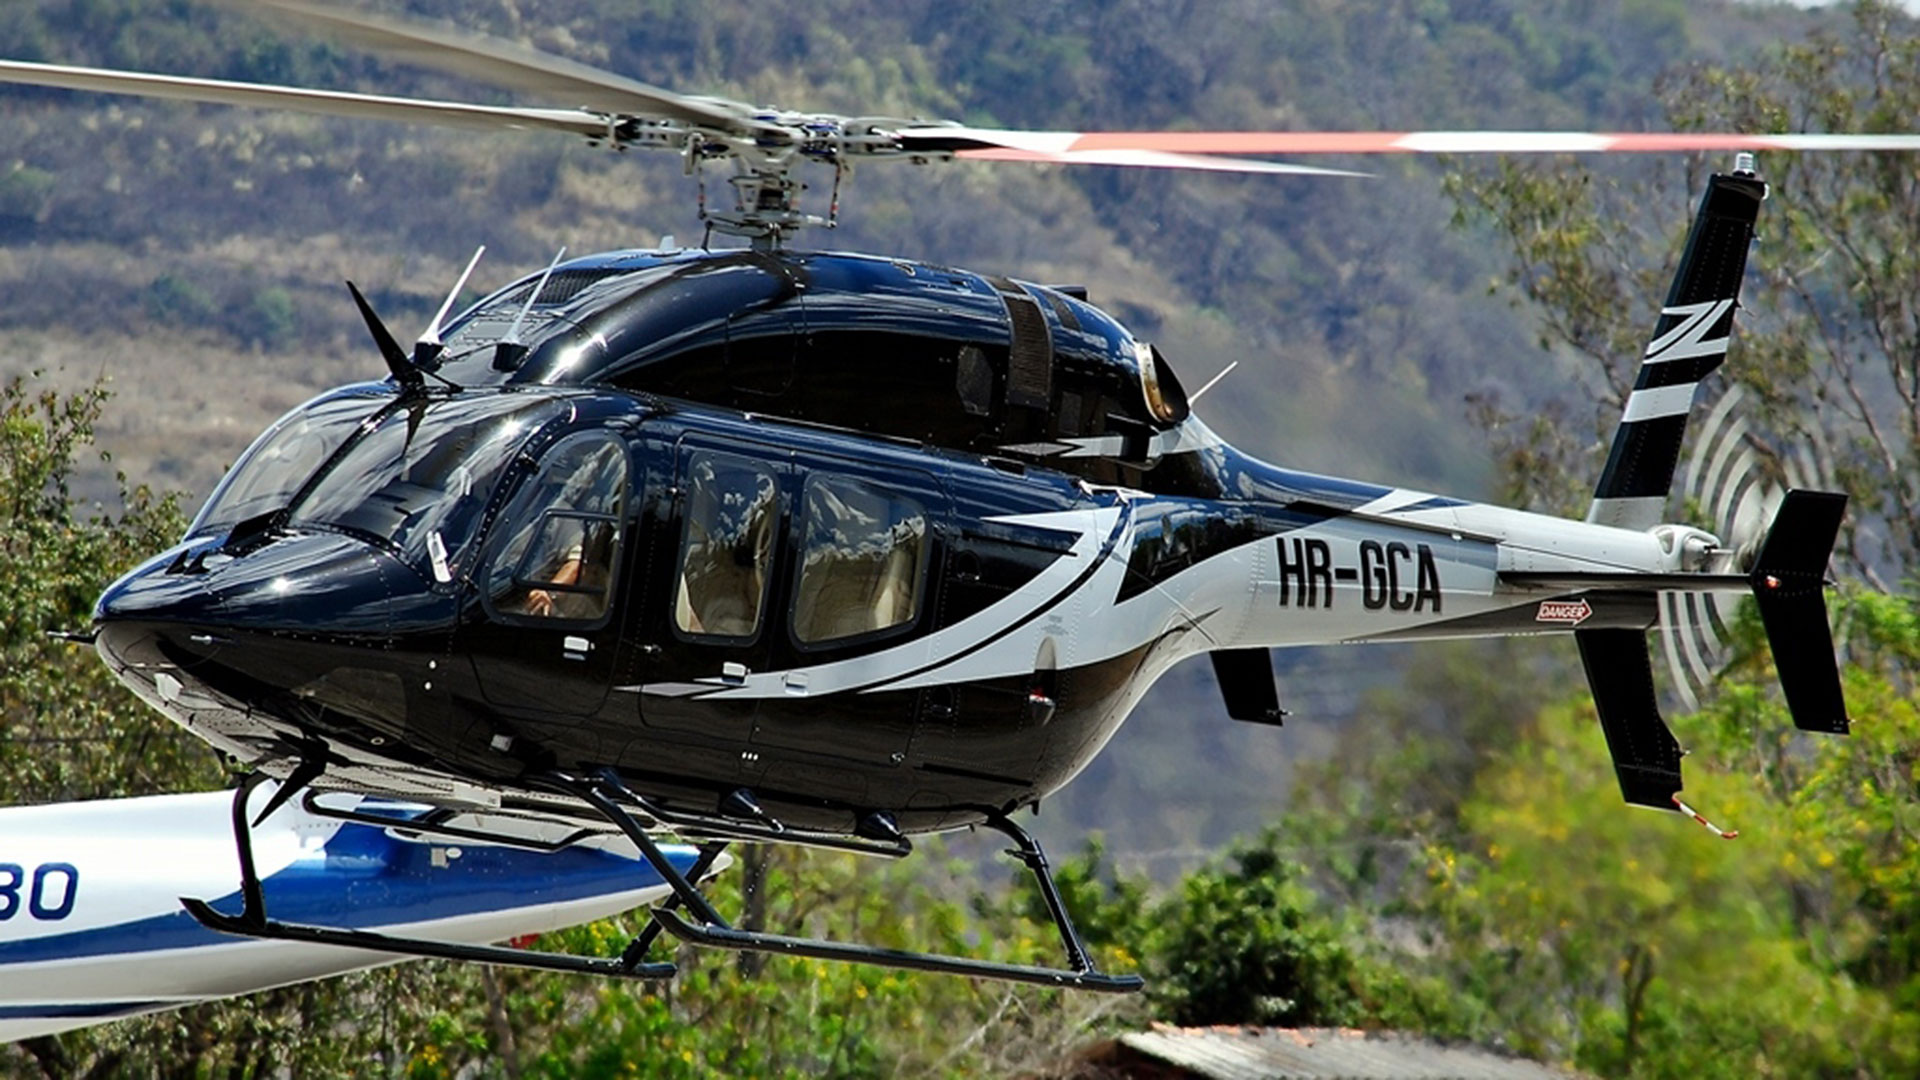 Foto de archivo del helicóptero Bell 429 global ranger, registro HR-GCA, comprado por la familia de Juan Orlando Hernández a través de una red de testaferros de la que formó parte uno de los narcotraficantes más poderosos del país.